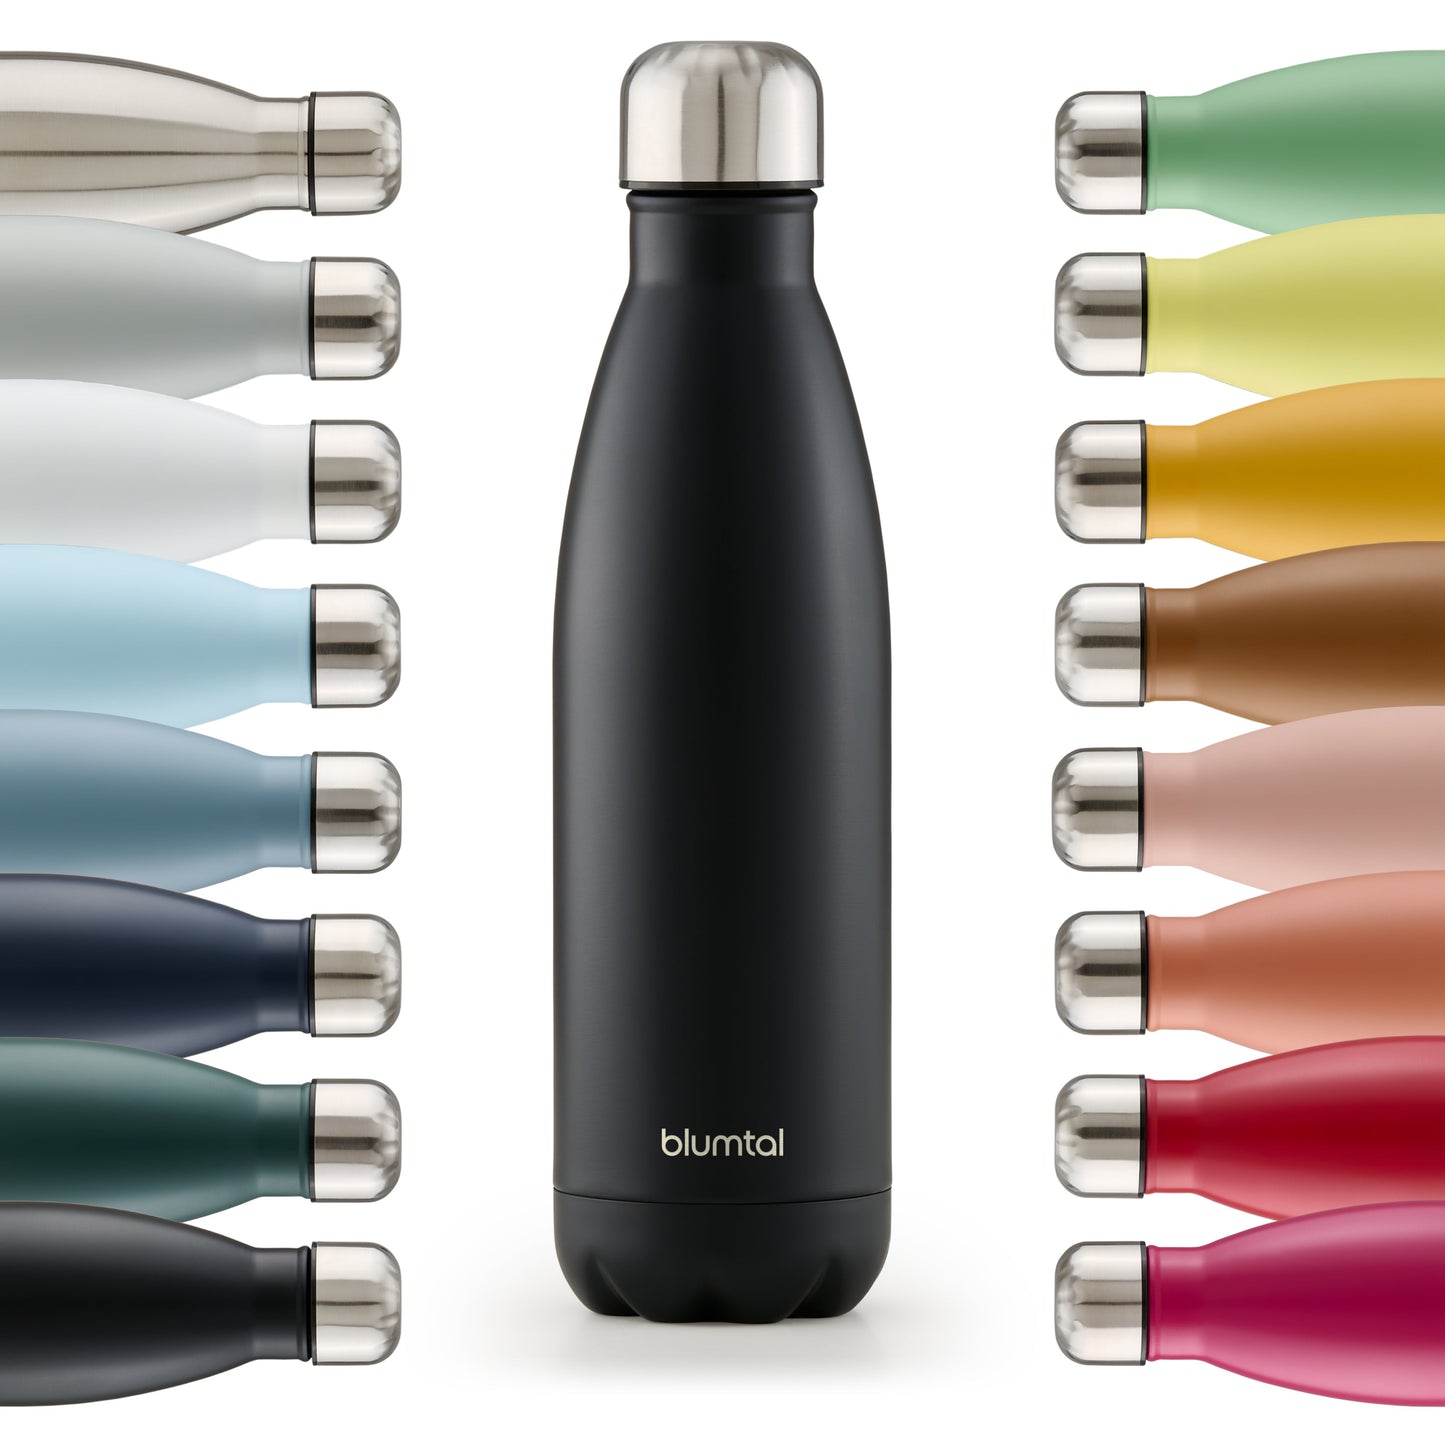 Farbige Auswahl an isolierten Edelstahl-Trinkflaschen von blumtal in einer Reihe angeordnet mit Fokus auf eine vorderseitige schwarz farbene Flasche.